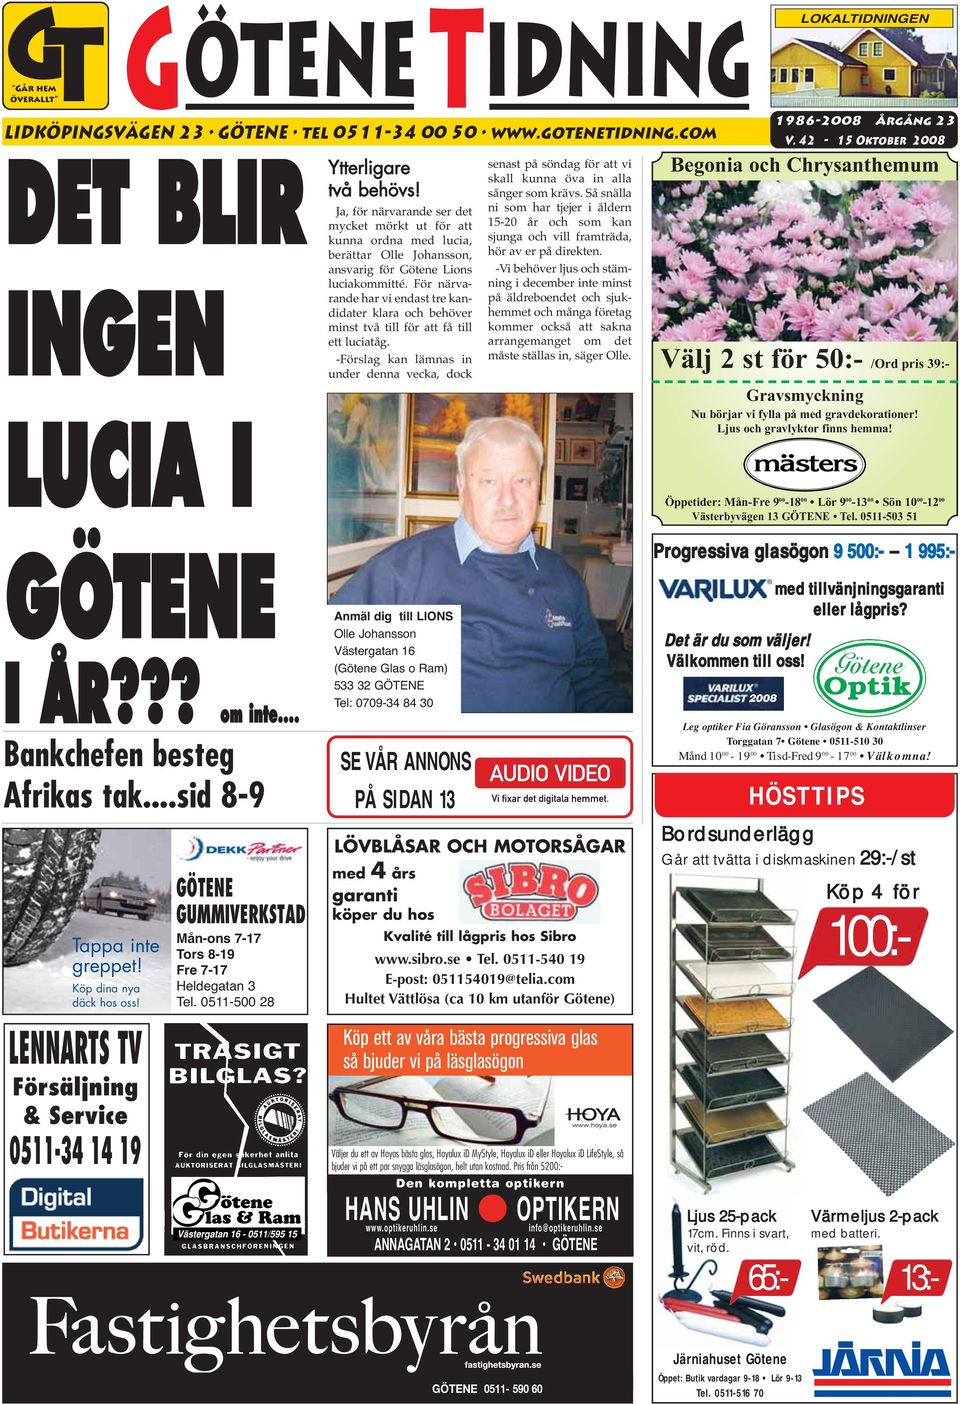 INGEN LUCIA I Ja, för närvarande ser det mycket mörkt ut för att kunna ordna med lucia, berättar Olle Johansson, ansvarig för Götene Lions luciakommitté.